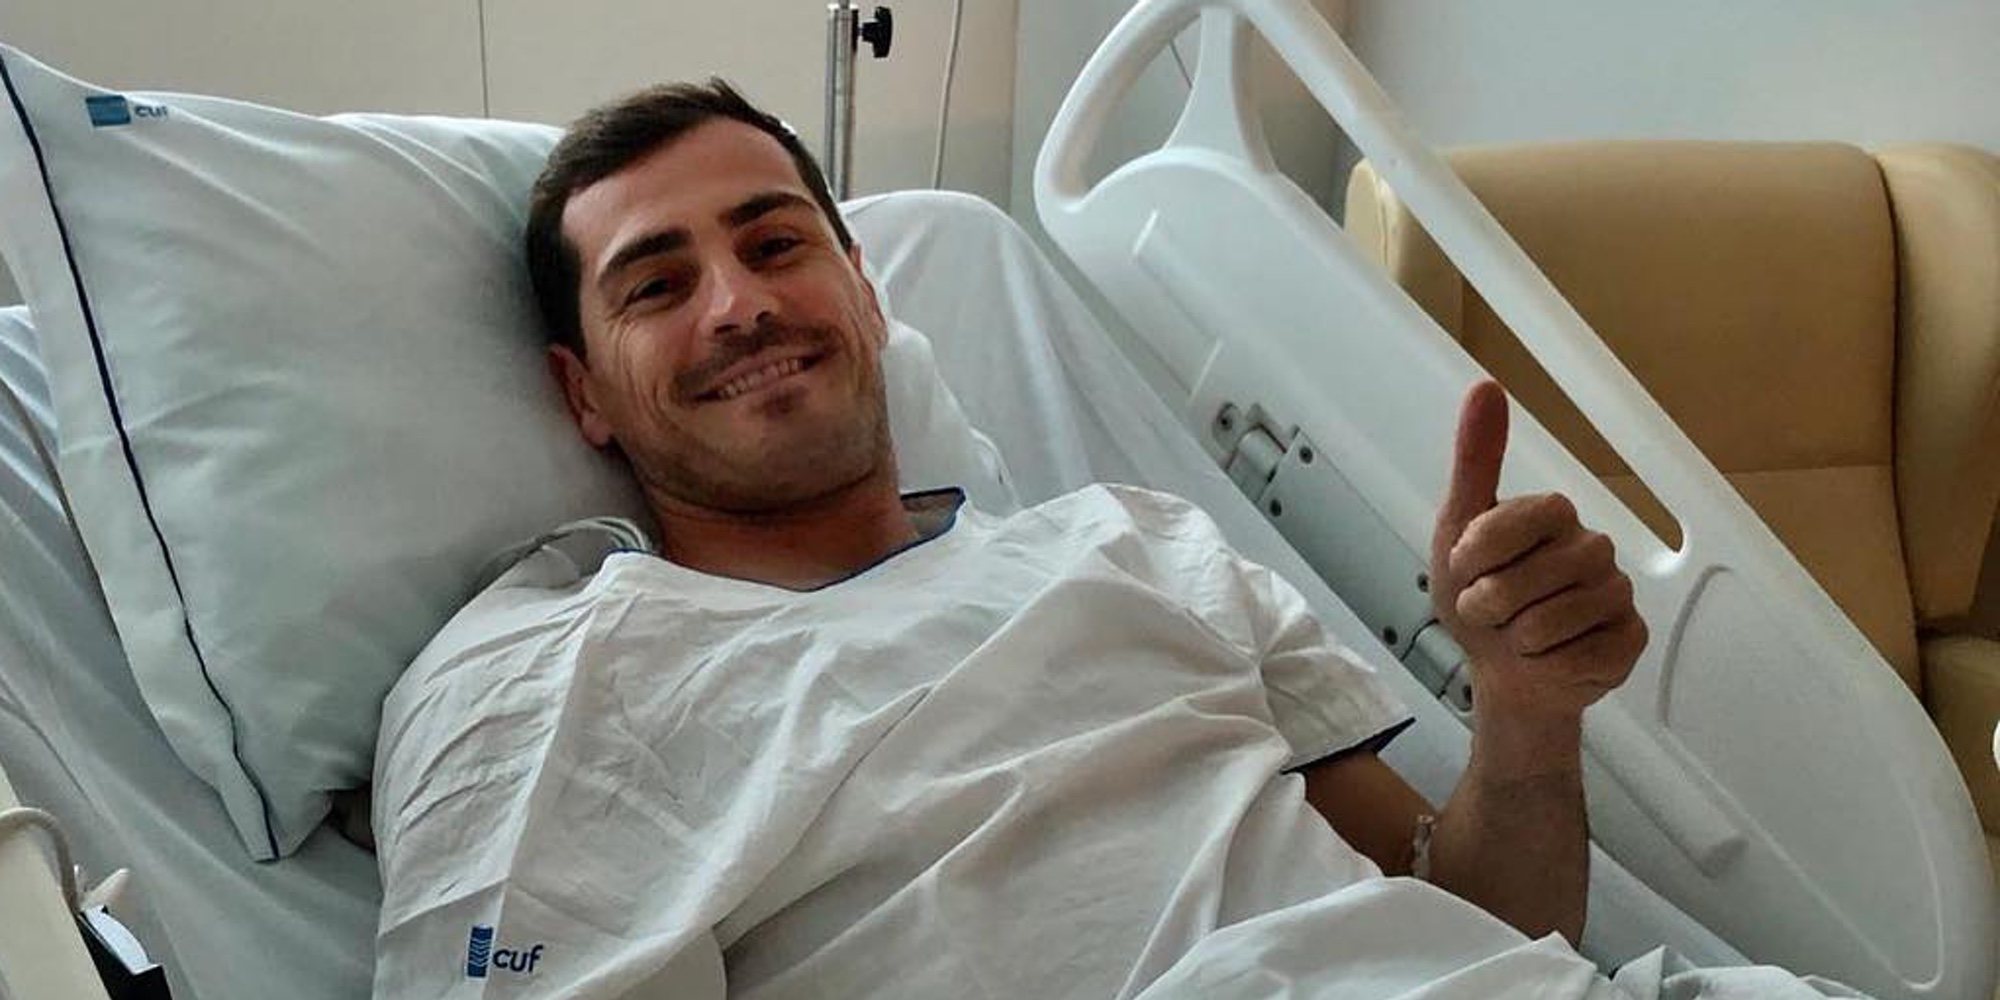 El mensaje tranquilizador de Iker Casillas tras sufrir un infarto